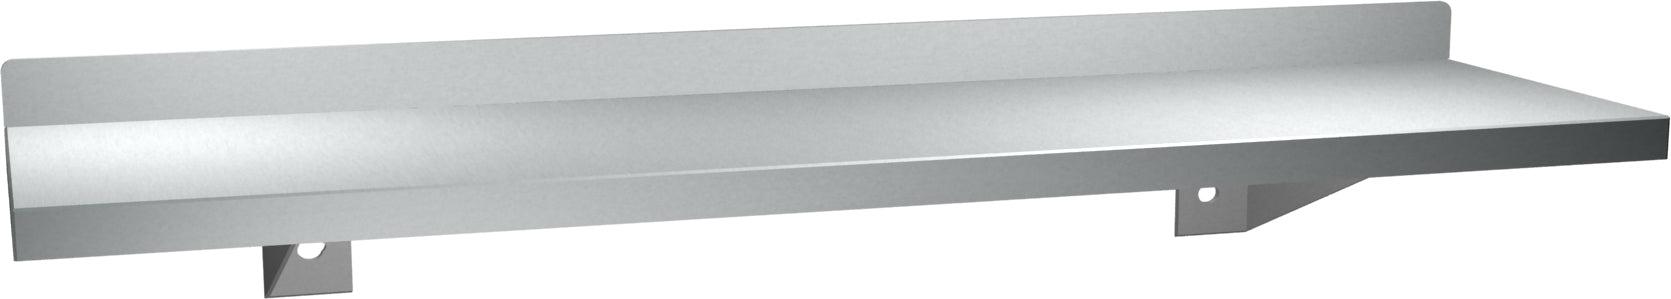 ASI 0694-36 Shelf With Backsplash, Stainless Steel, 5 X 36 Inch